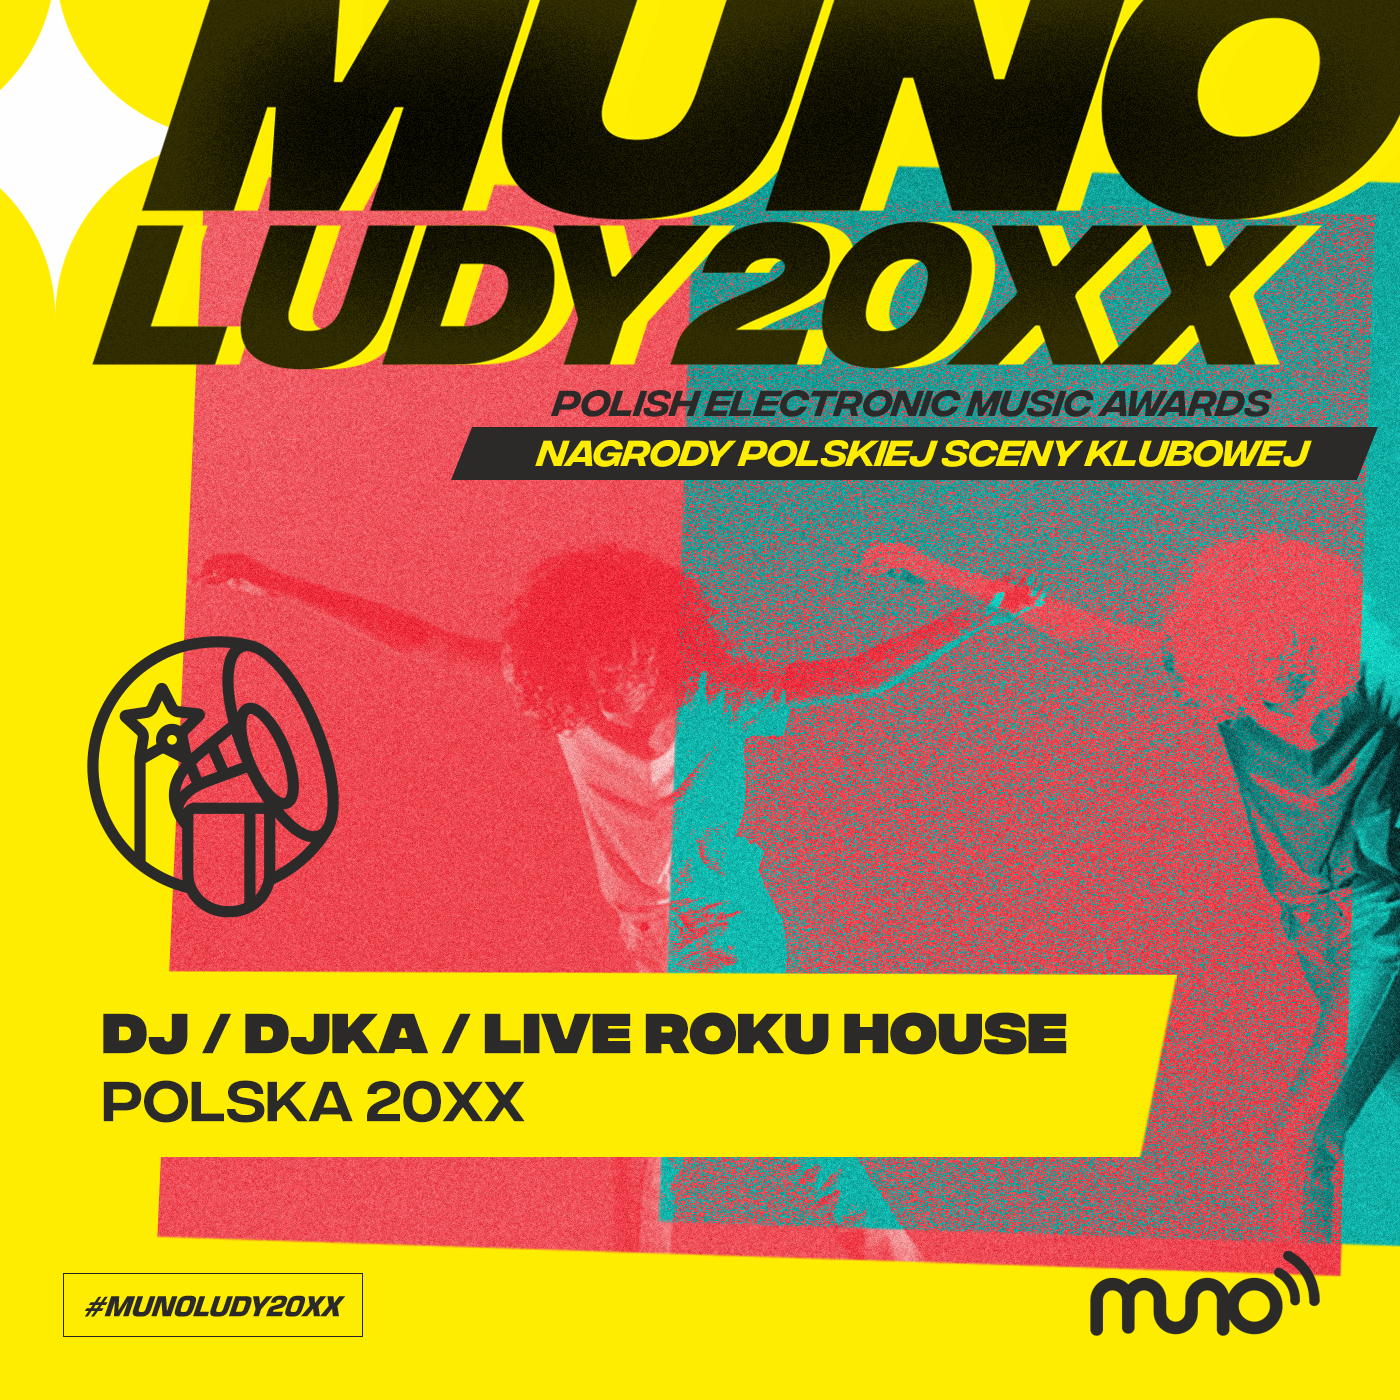 Munoludy 20XX DJ DJka Live Roku House Polska 20XX